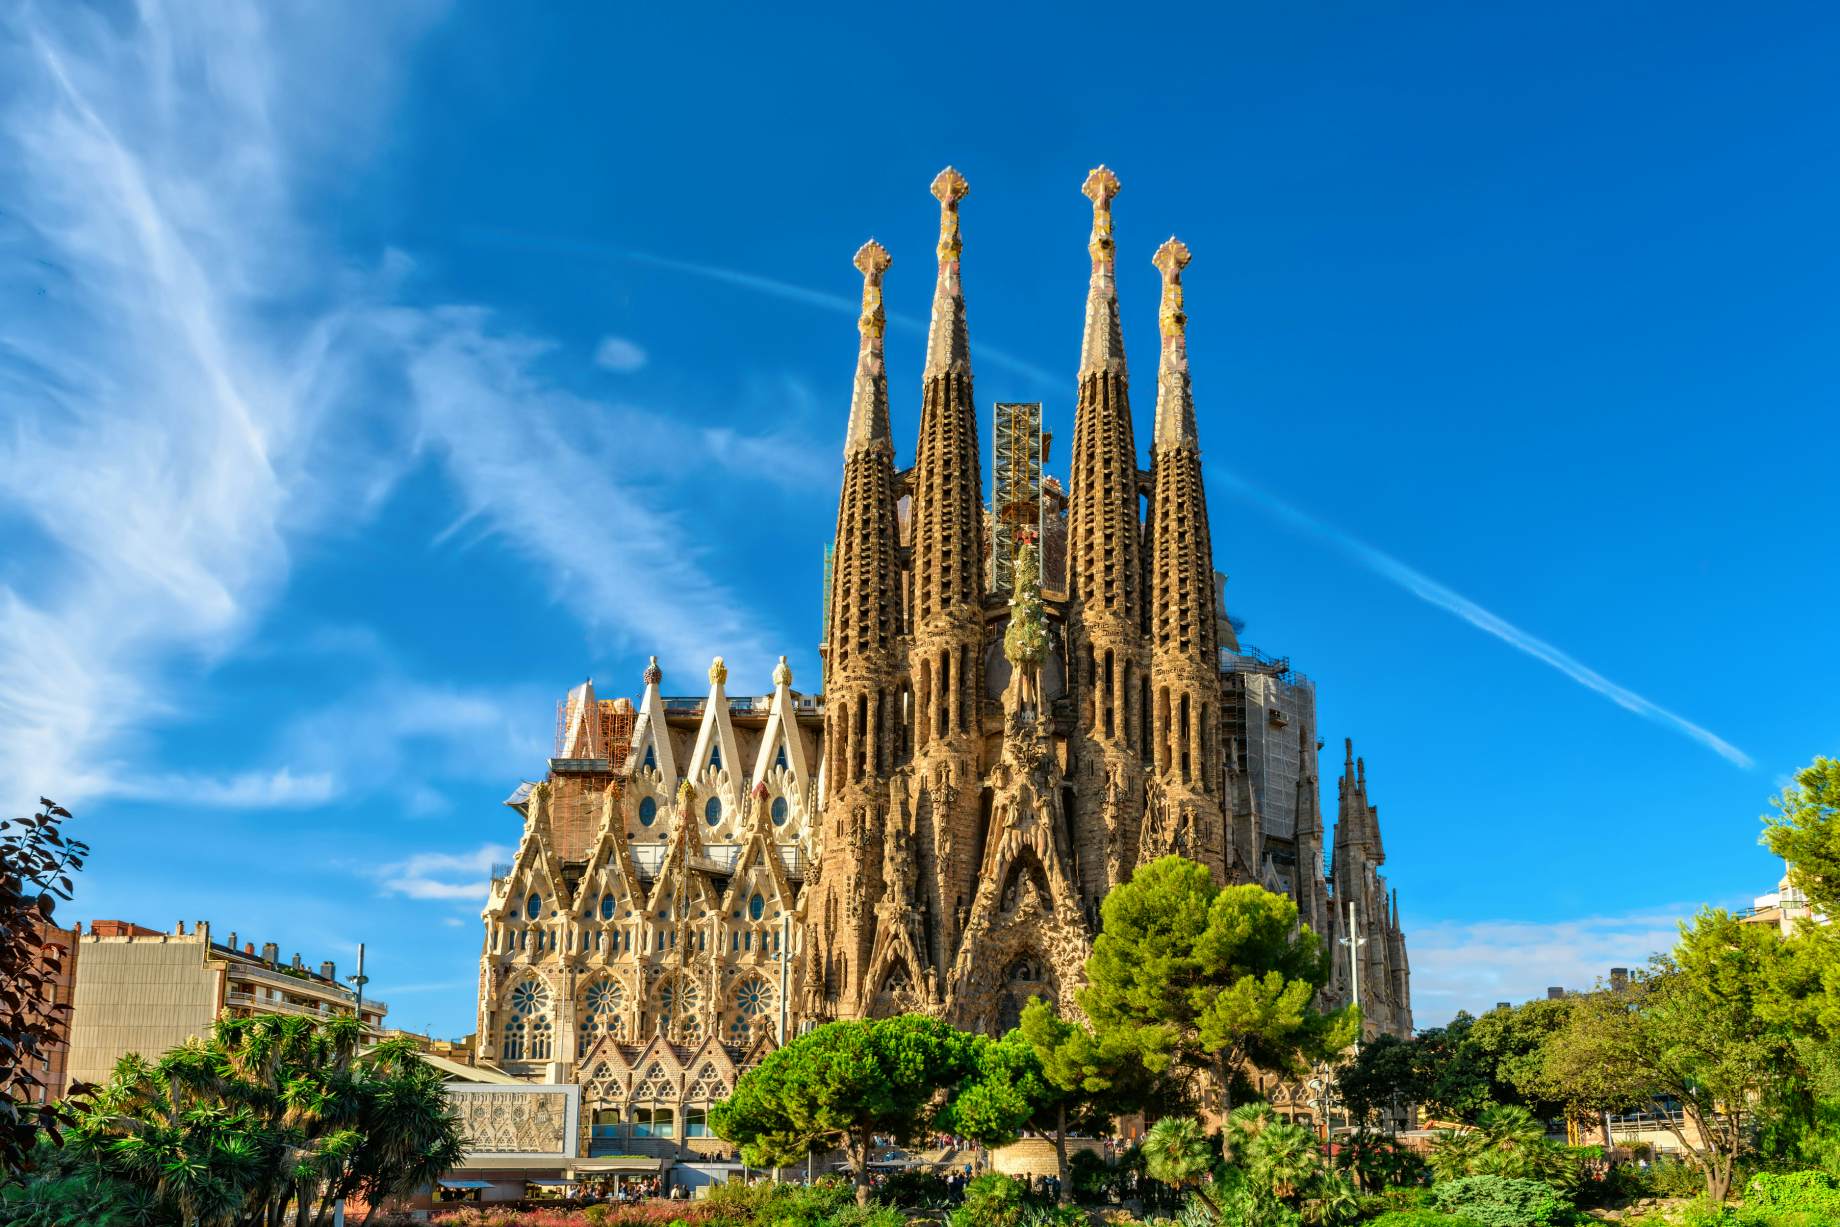 La Sagrada Família | Barcelona, Spain Attractions - Lonely Planet